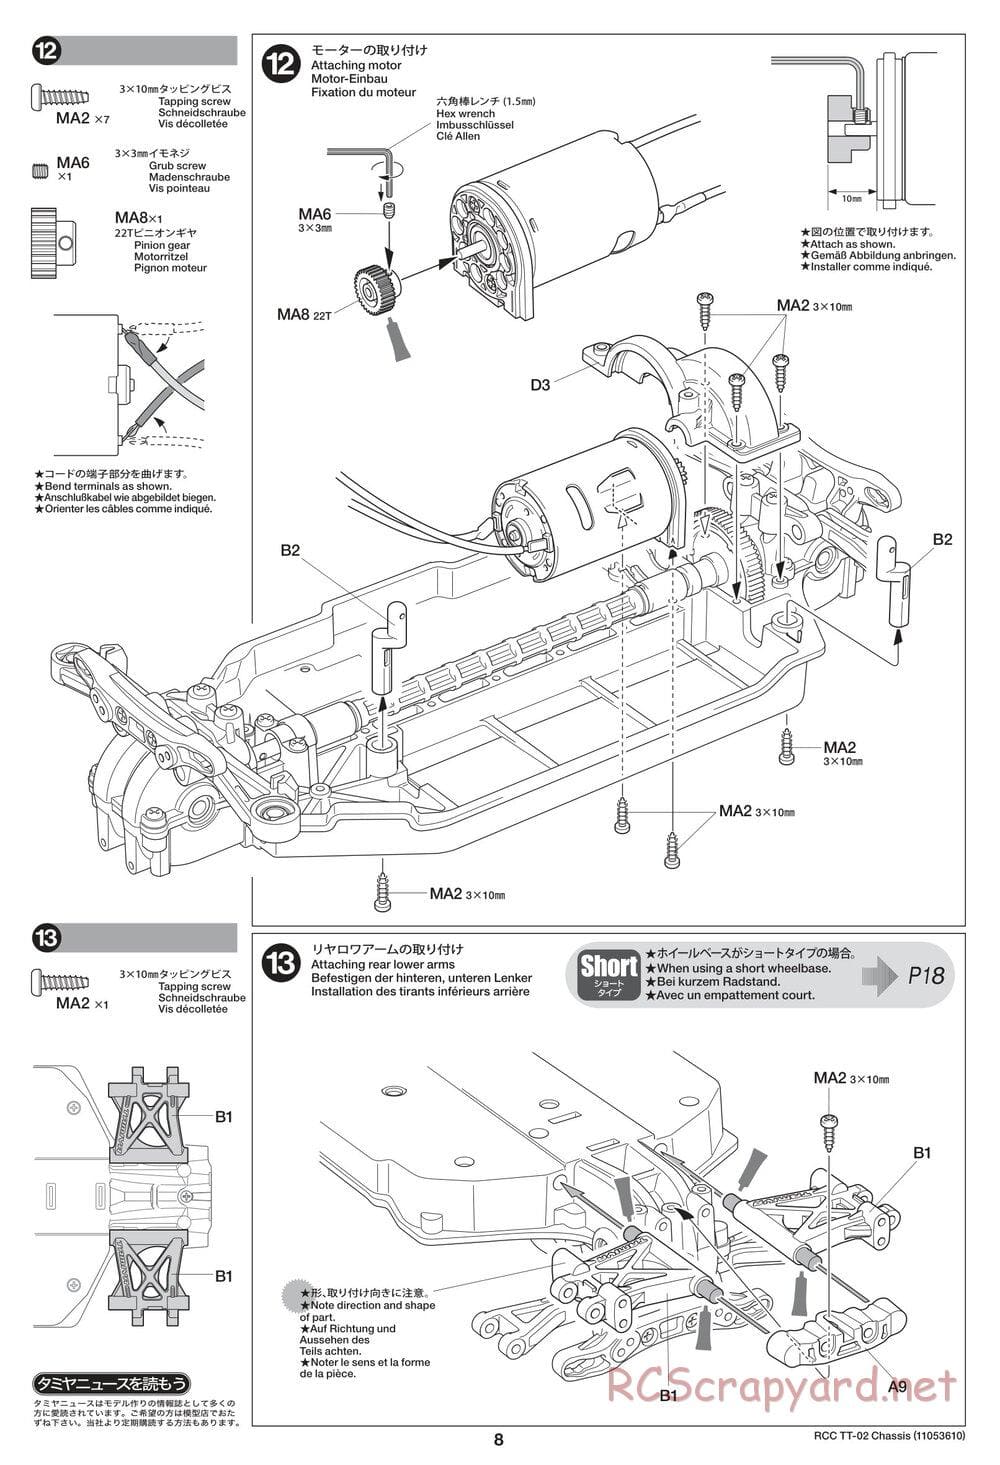 Tamiya - TT-02 Chassis - Manual - Page 8